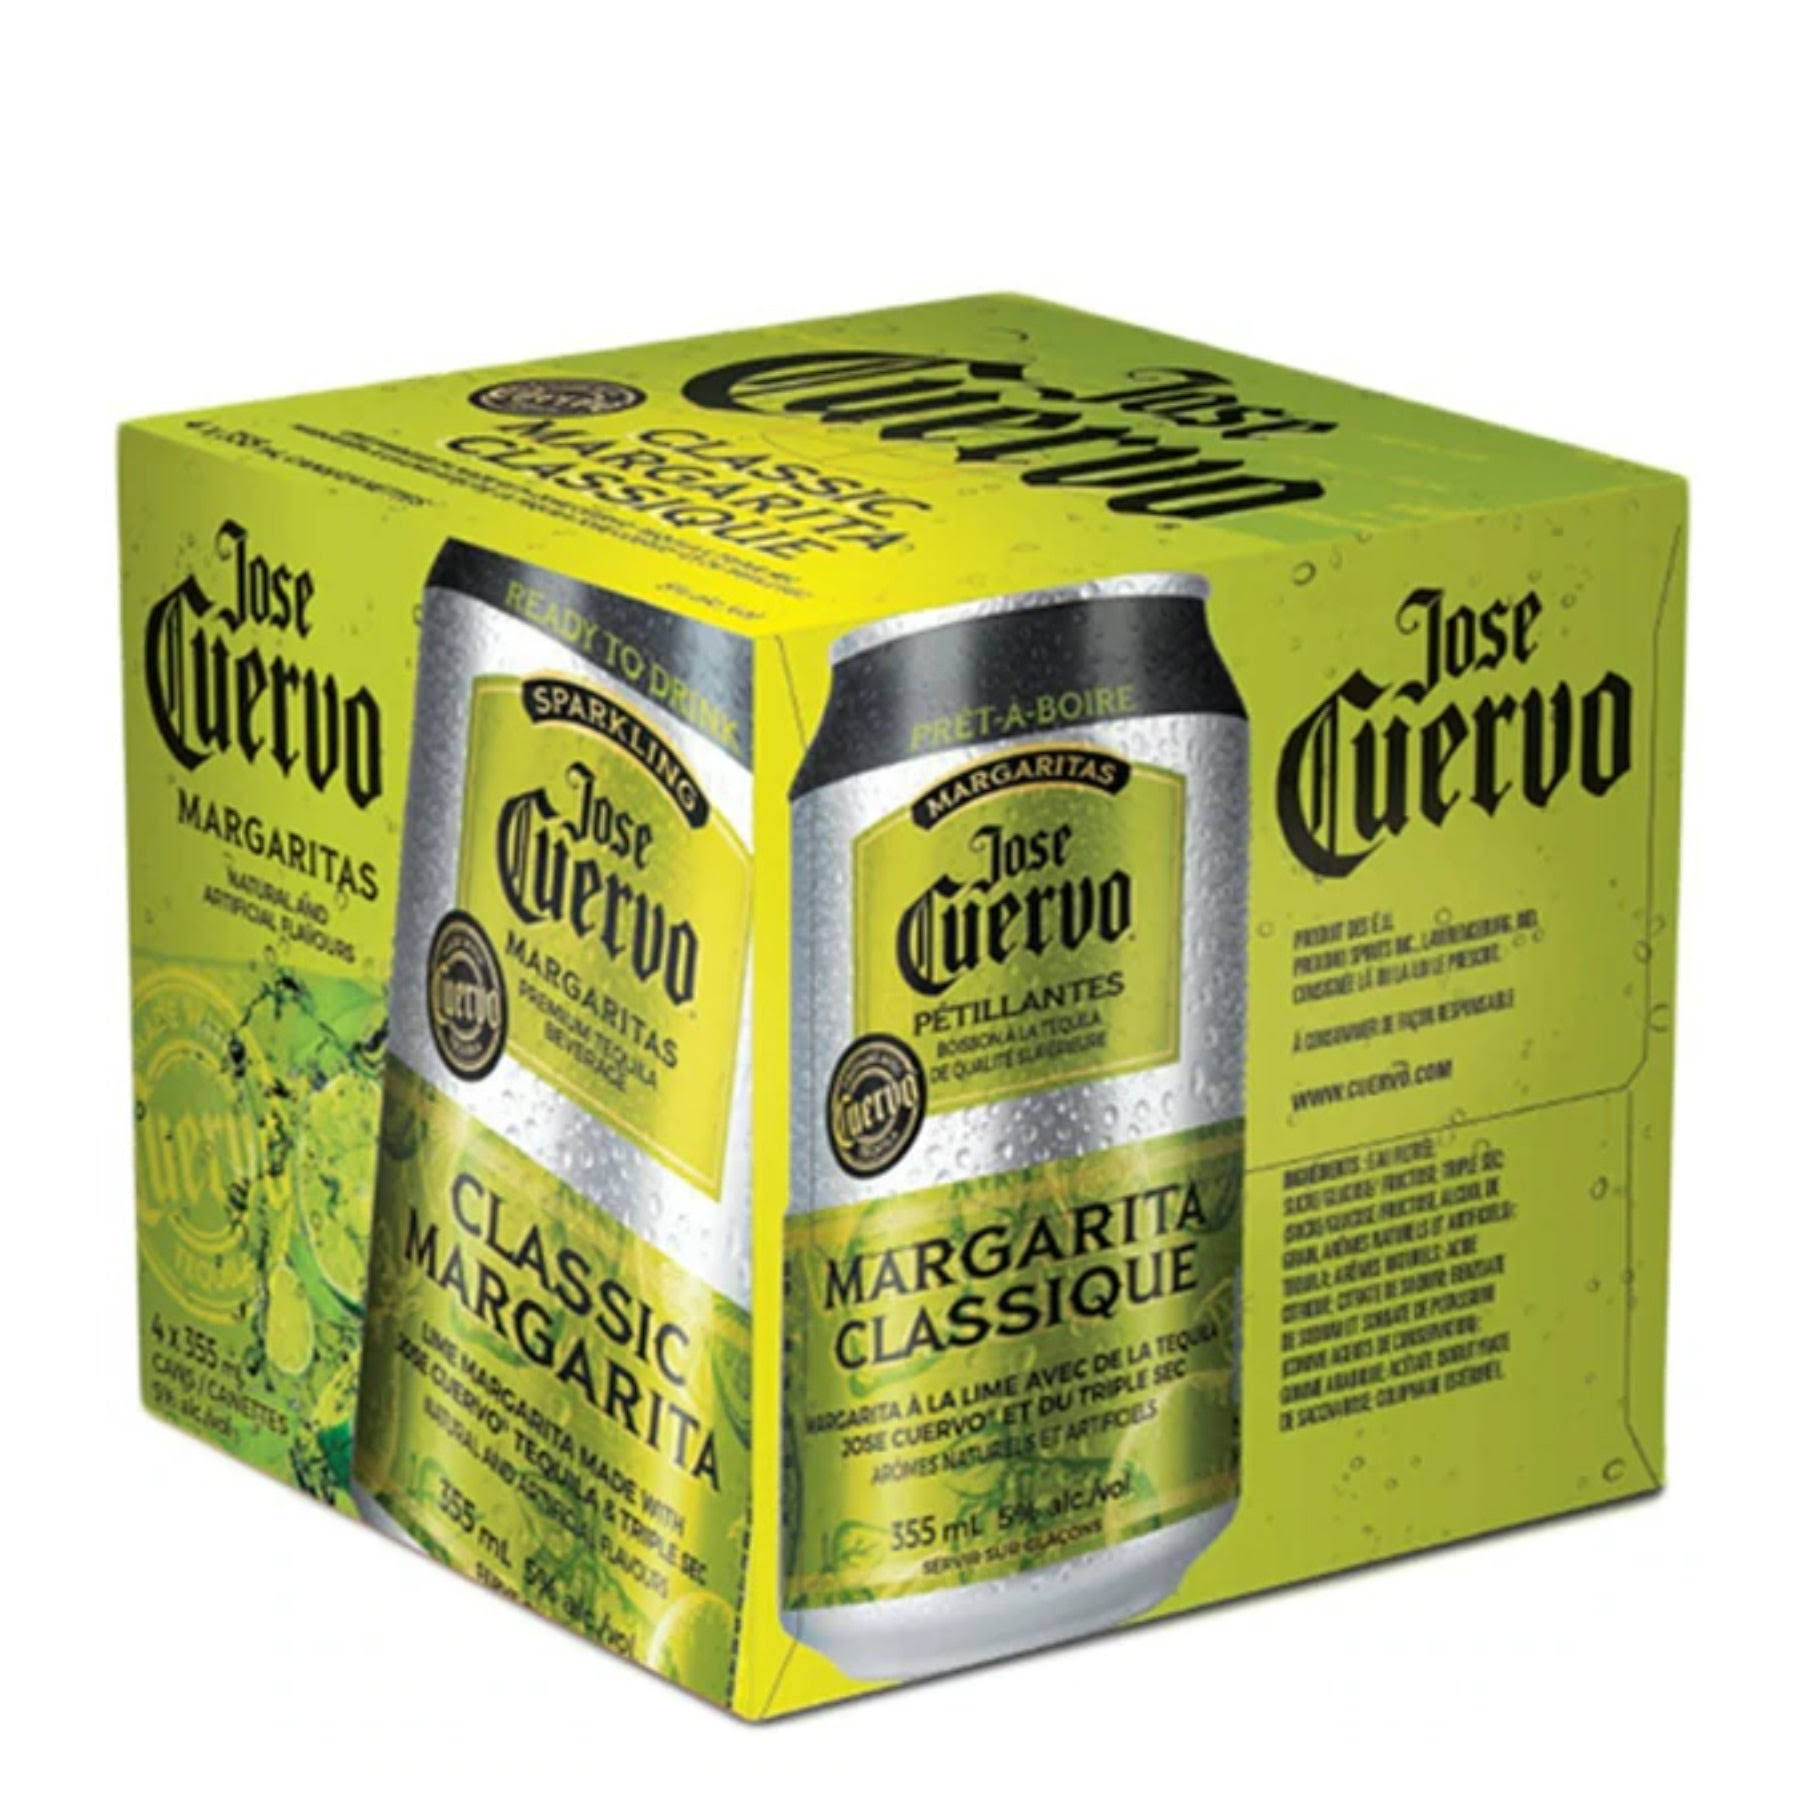 Jose Cuervo Margaritas, Sparkling - 4 pack, 6.8 fl oz cans